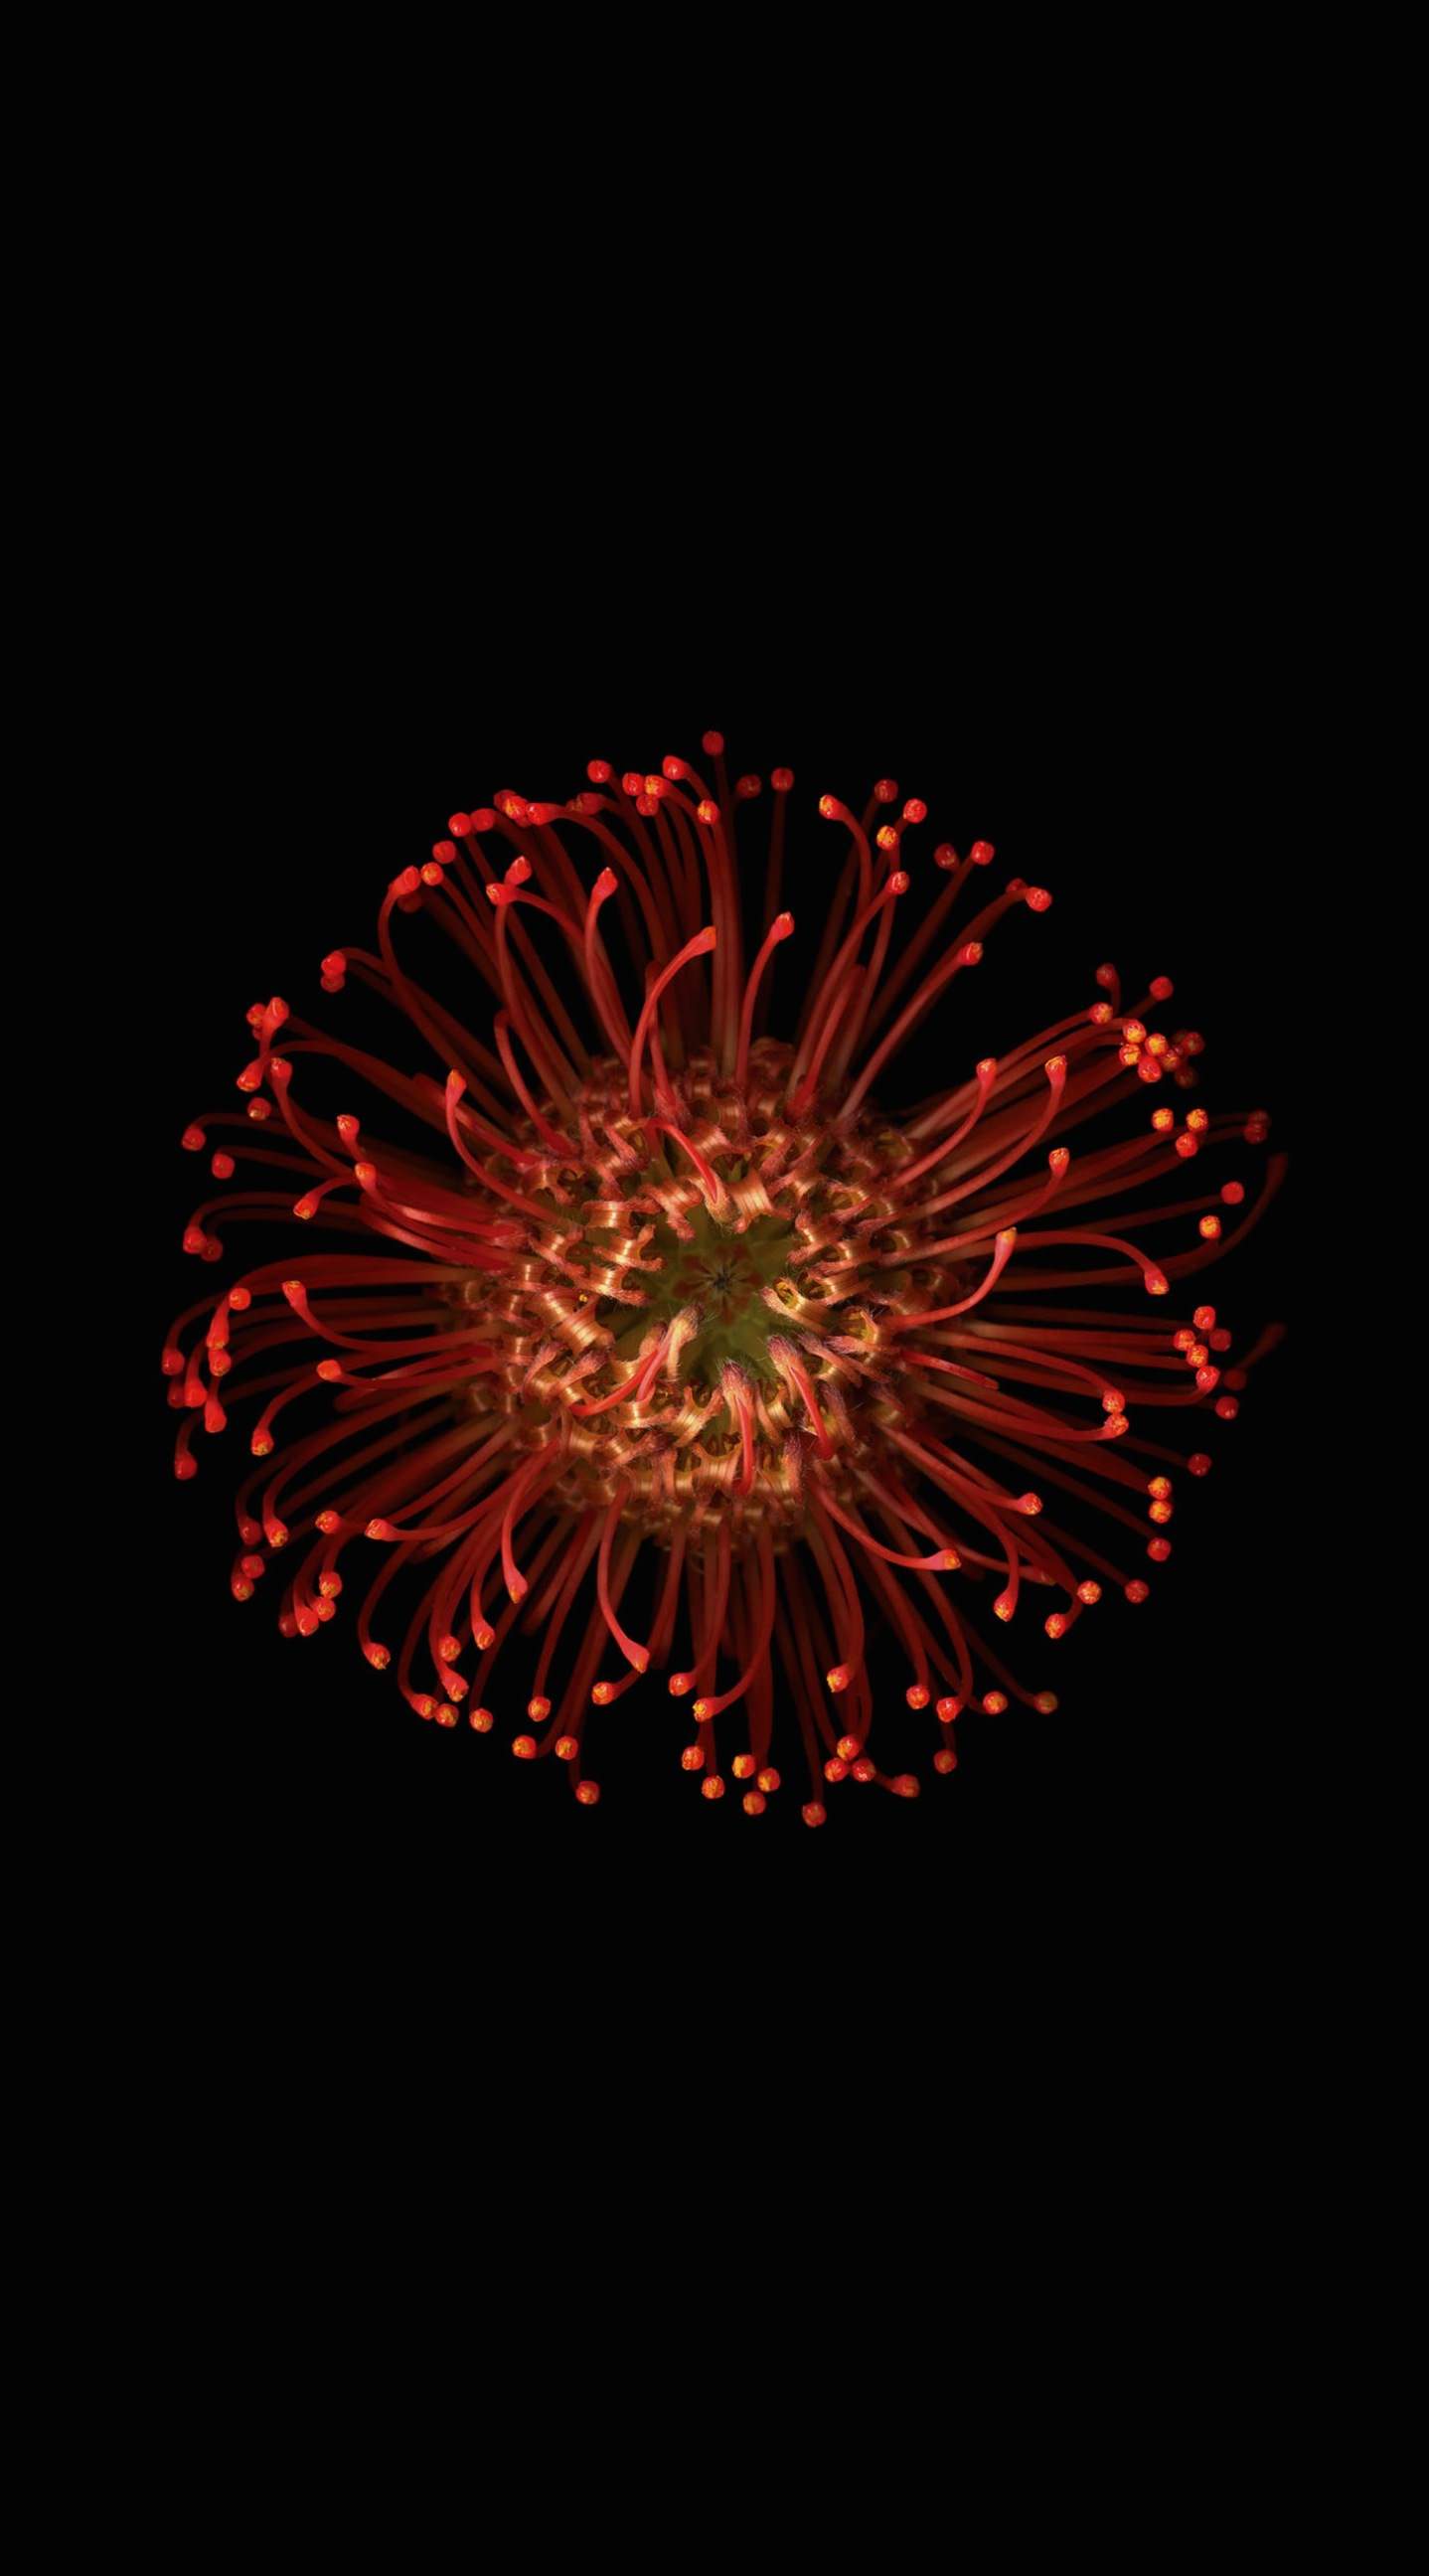 75 赤黒 壁紙 Iphone 美しい花の画像